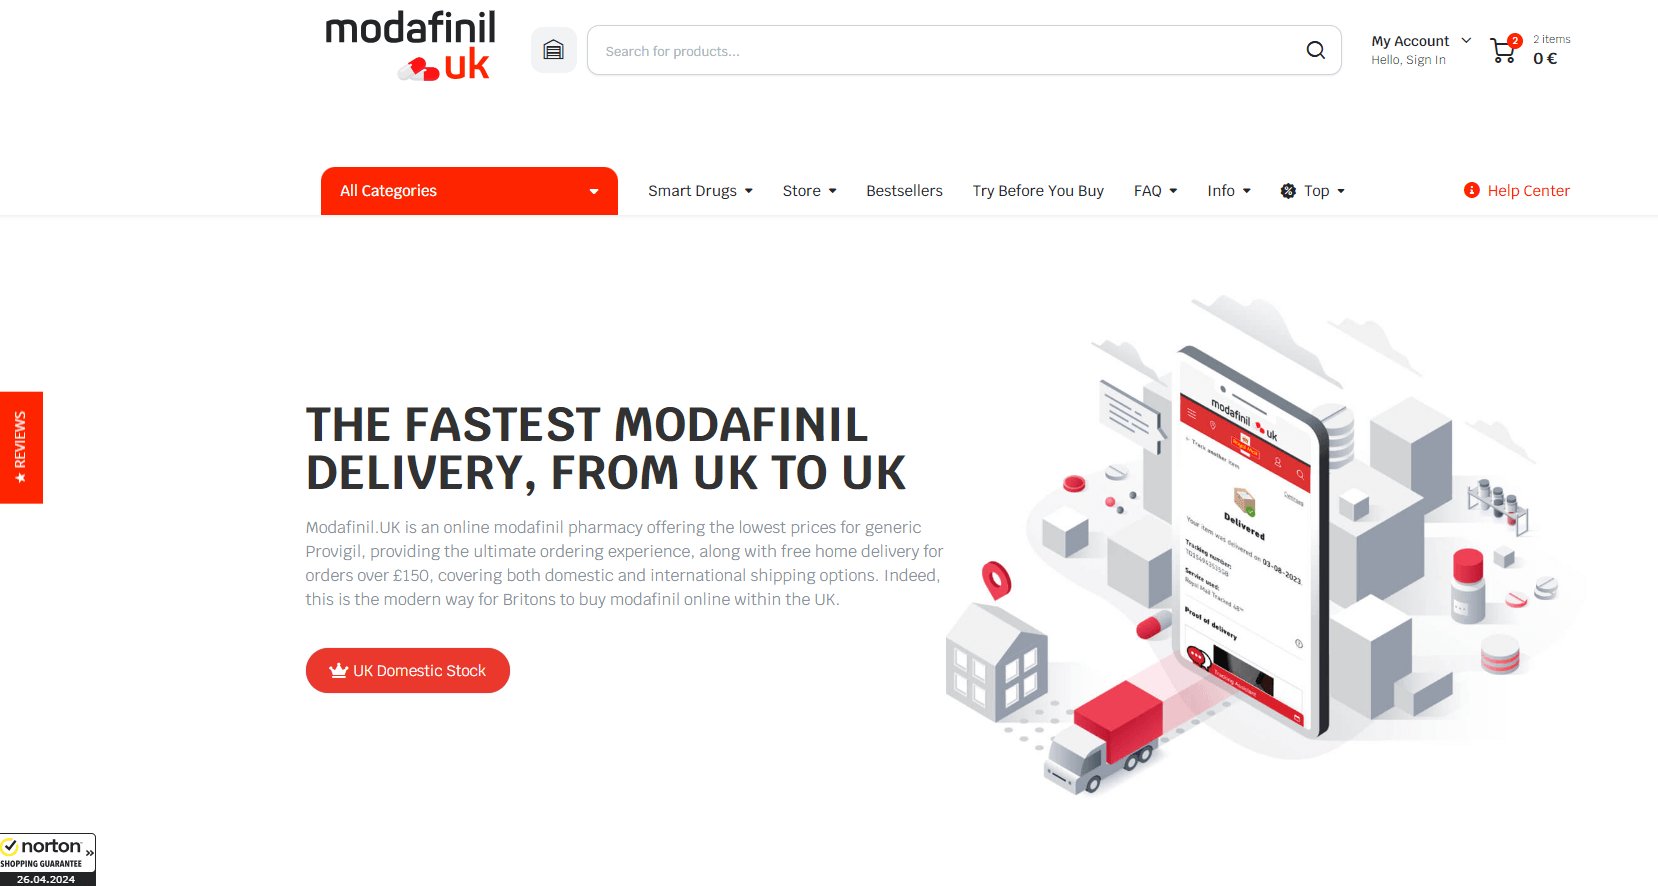 ModafinilUK Website